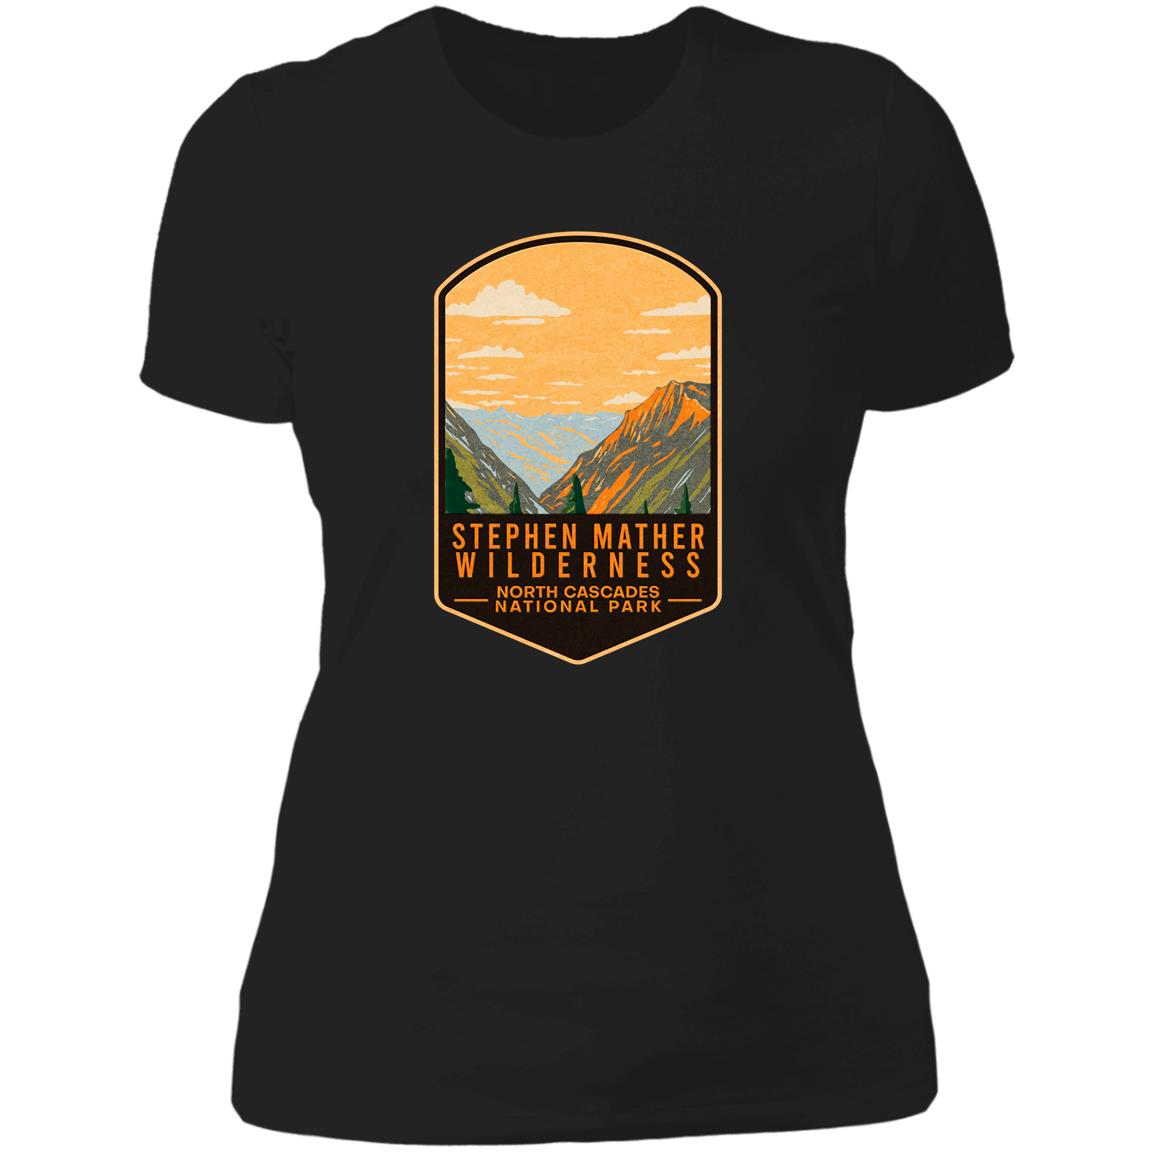 The Stephen Mather Wilderness Cascades National Park T-Shirt